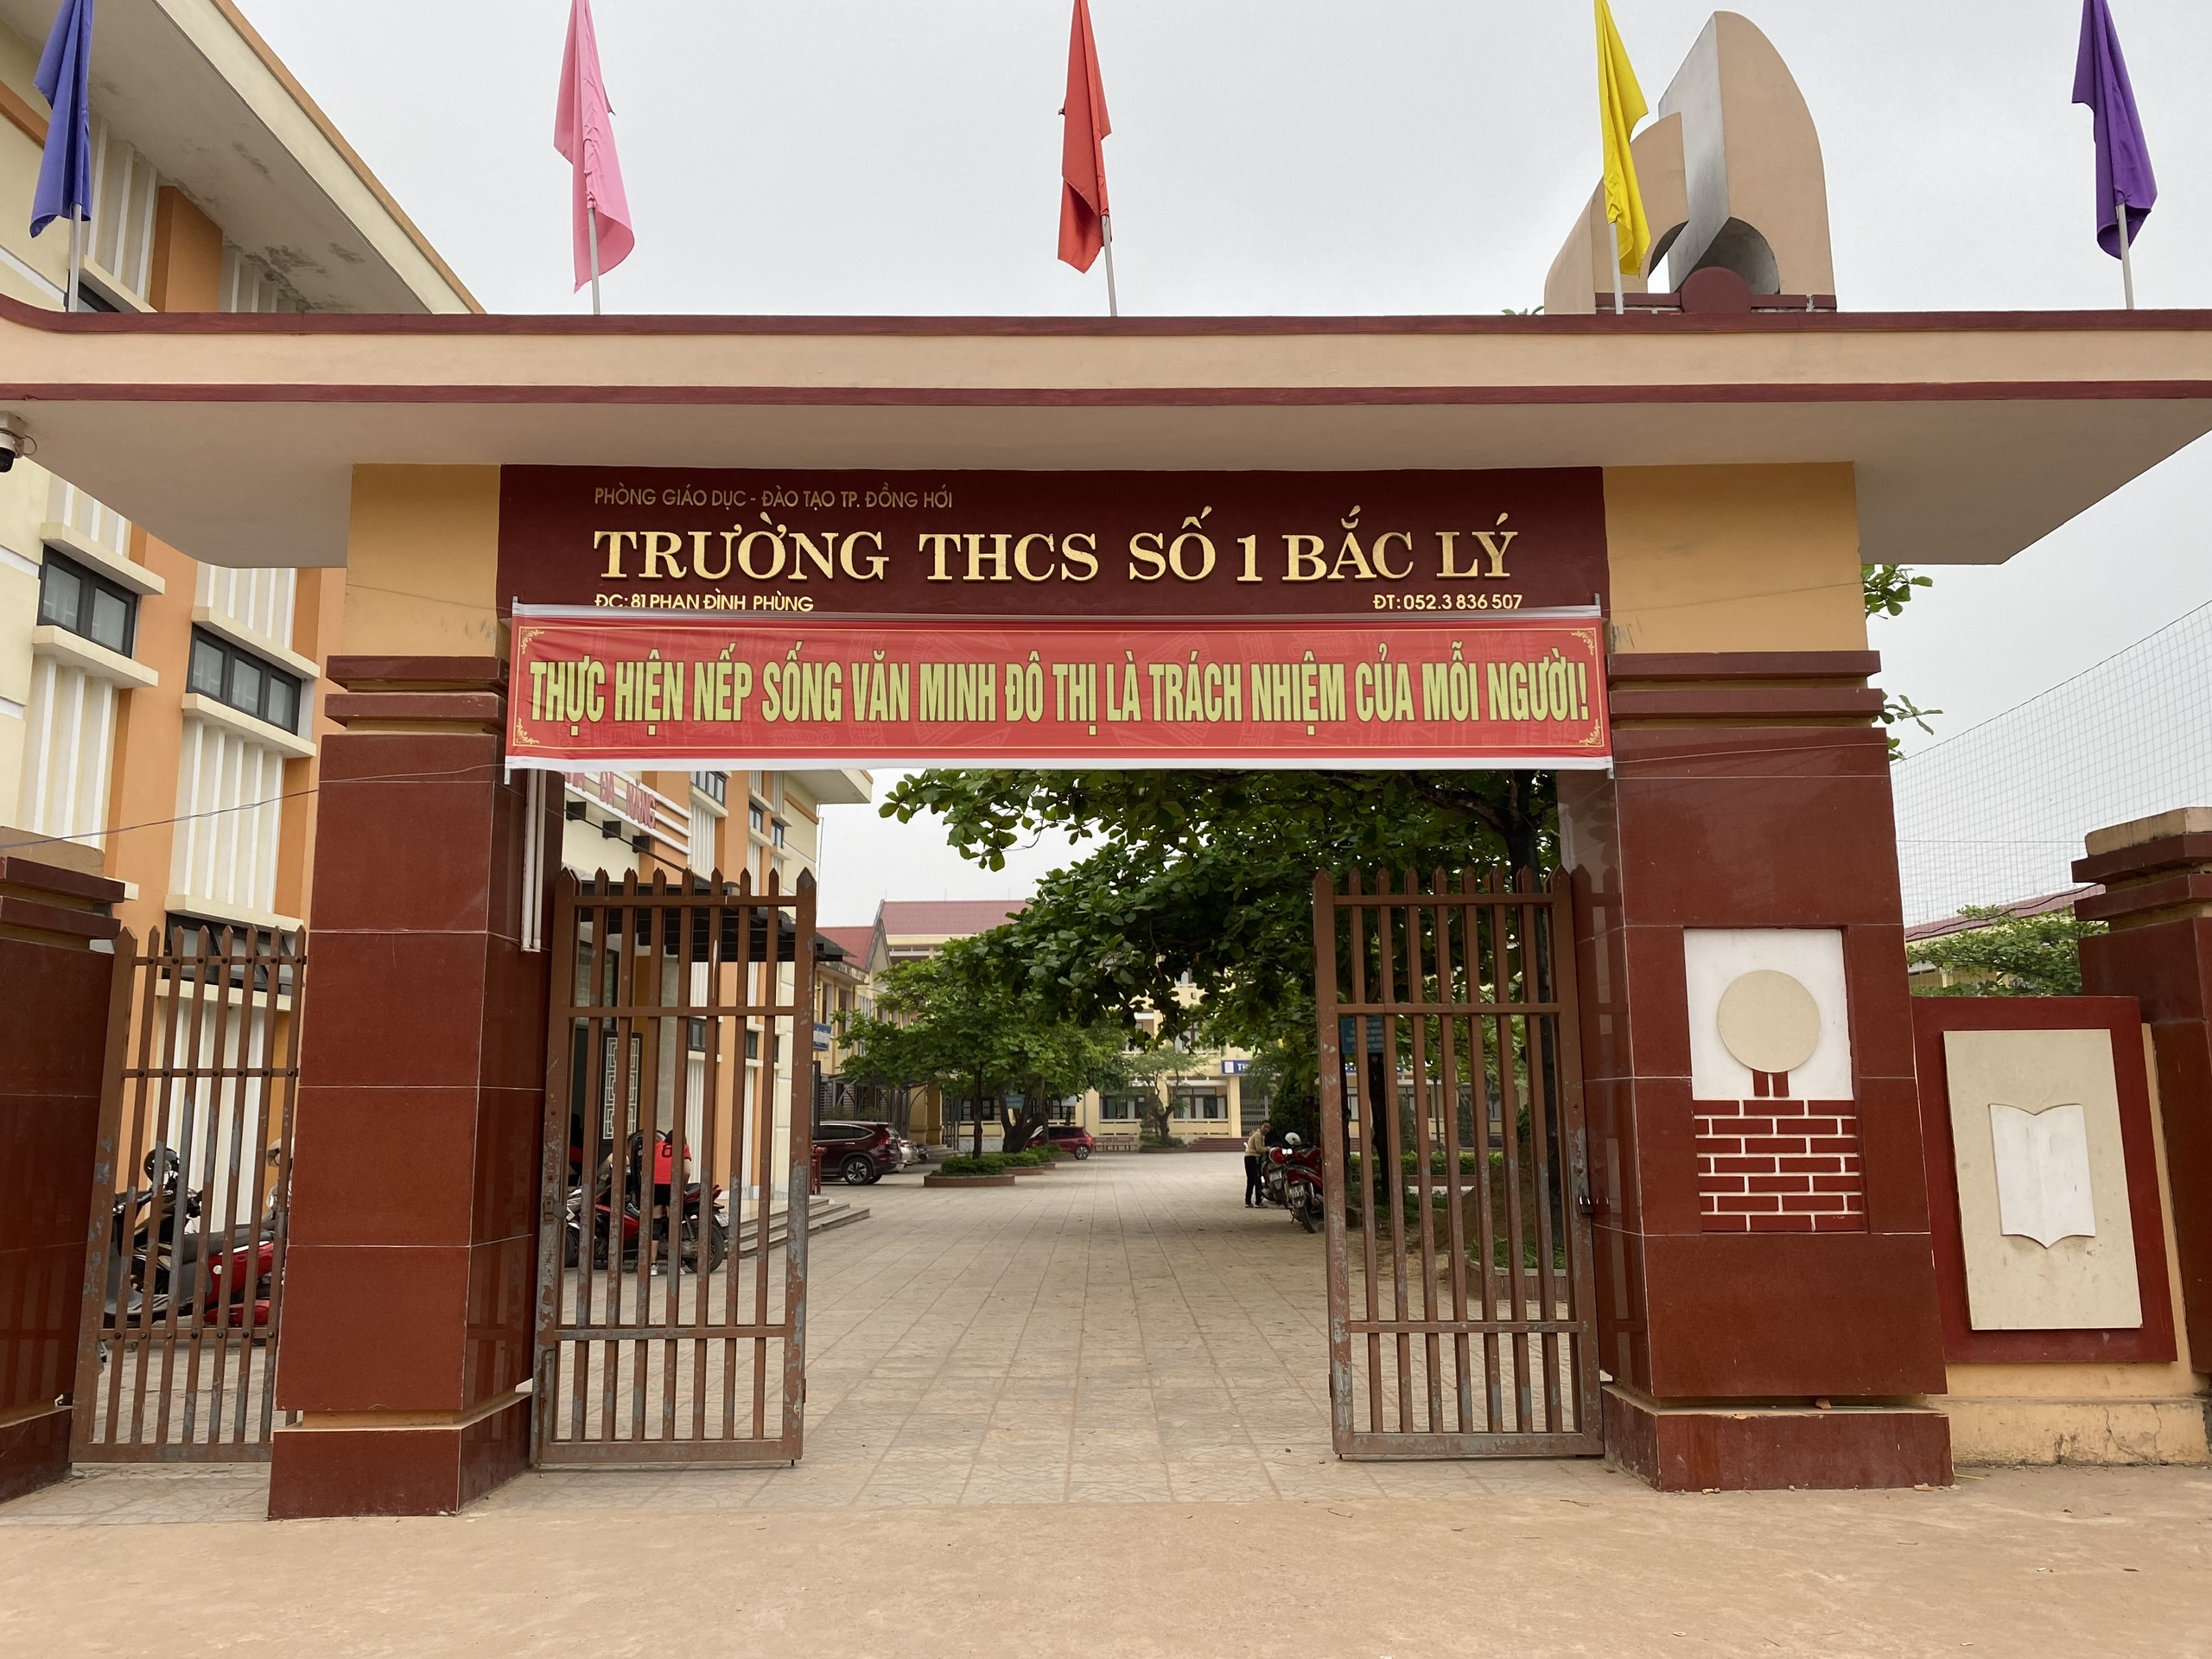 Trường THCS số 1 Bắc Lý, thành phố Đồng Hới, tỉnh Quảng Bình